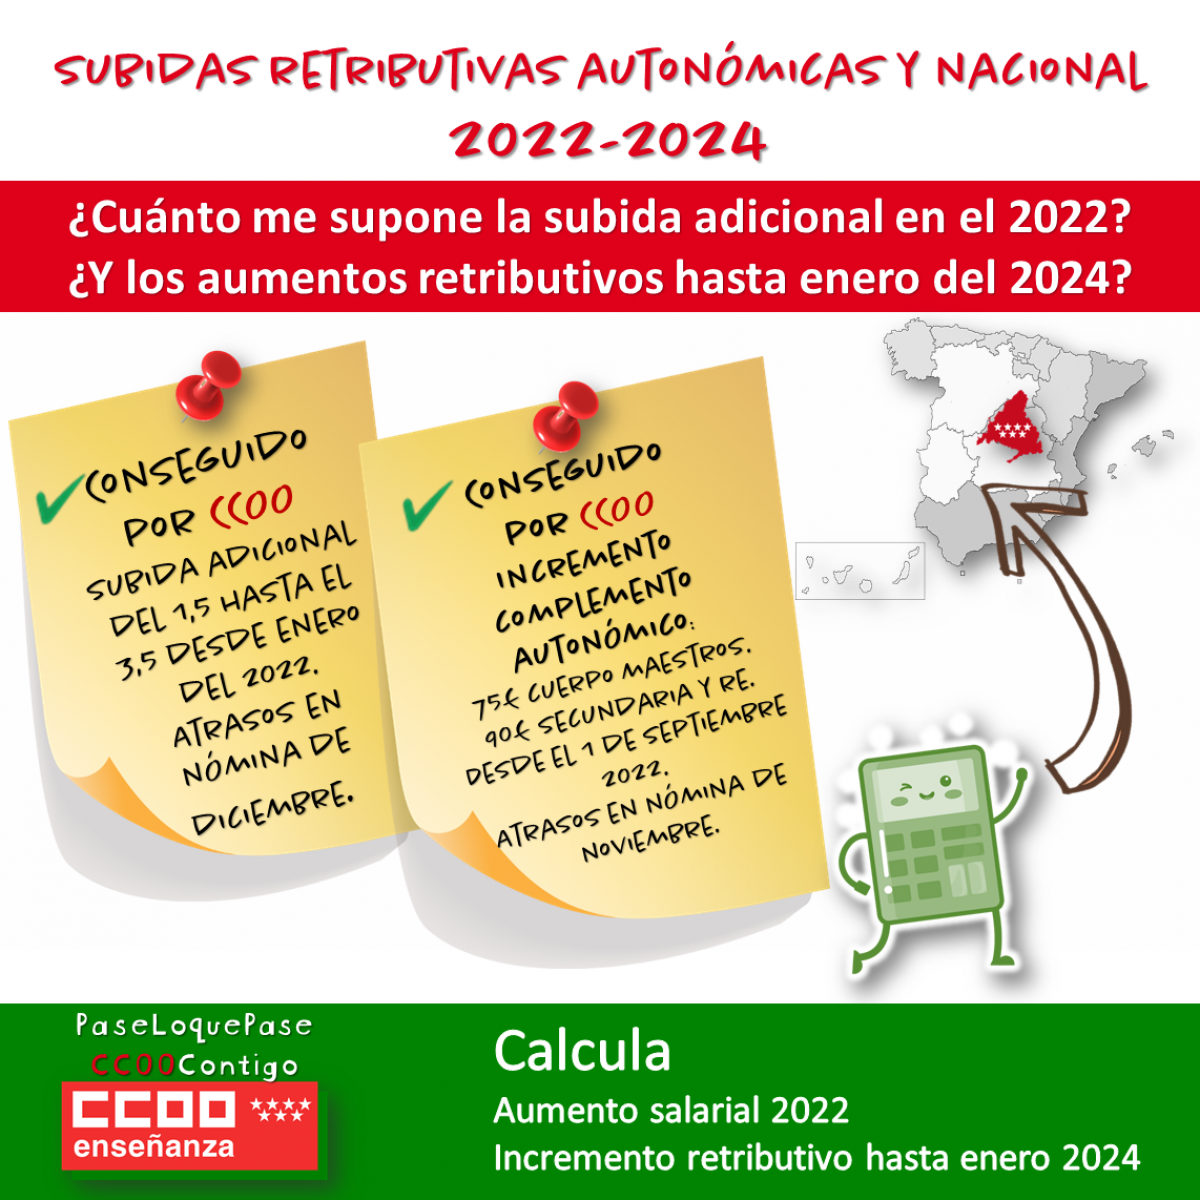 Subidas retributivas autonmicas y nacional 2022-2024 conseguido por CCOO